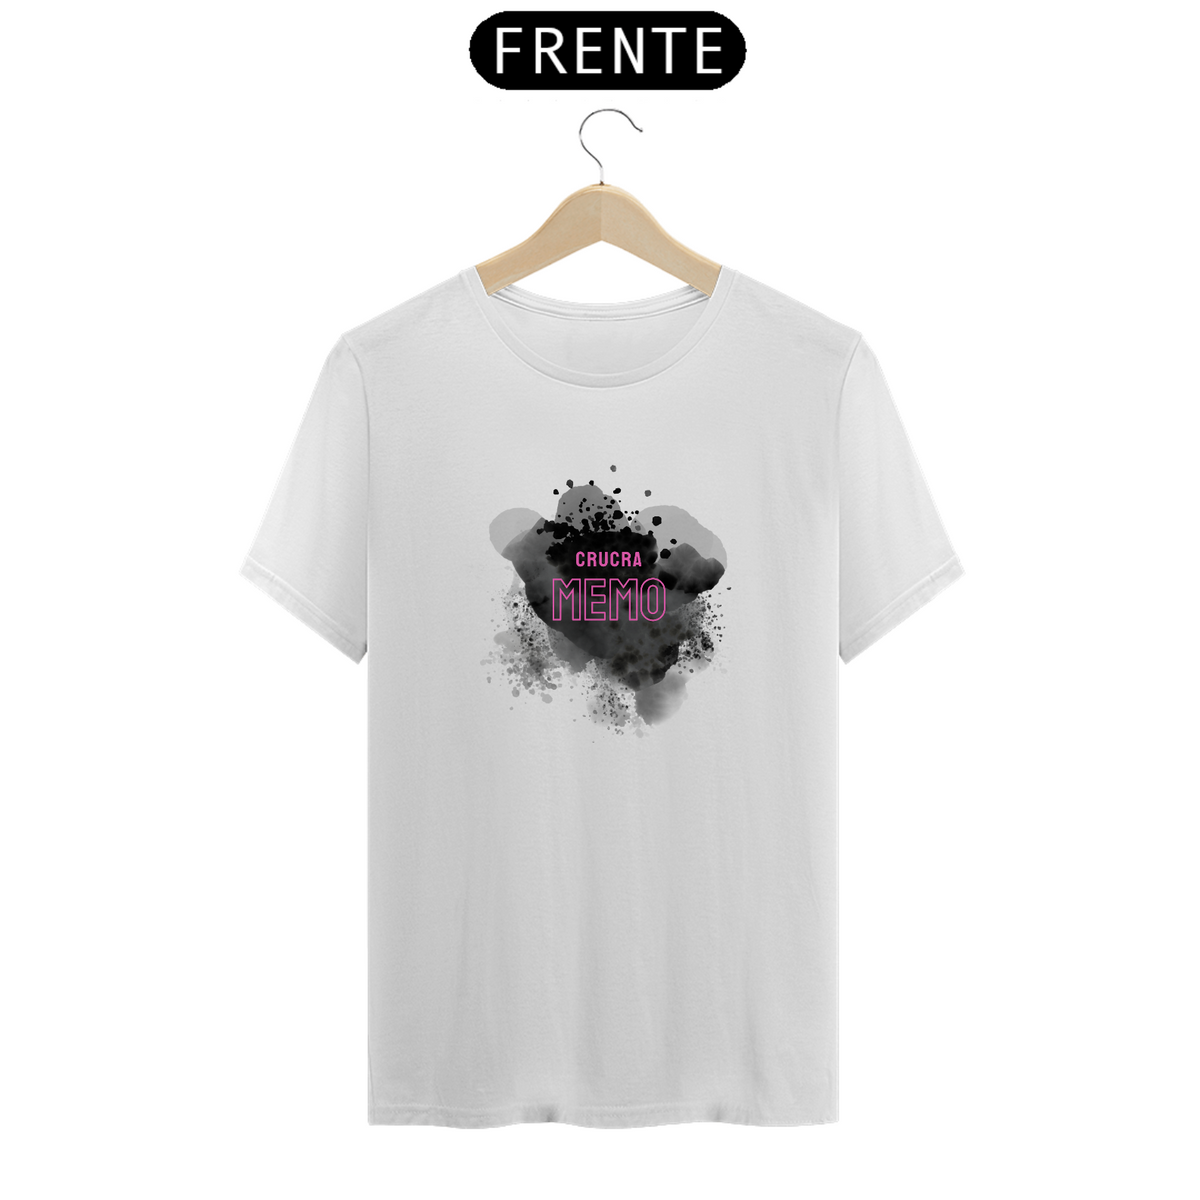 Nome do produto: Camiseta T-Shirt Classic Feminino / Chucra memo